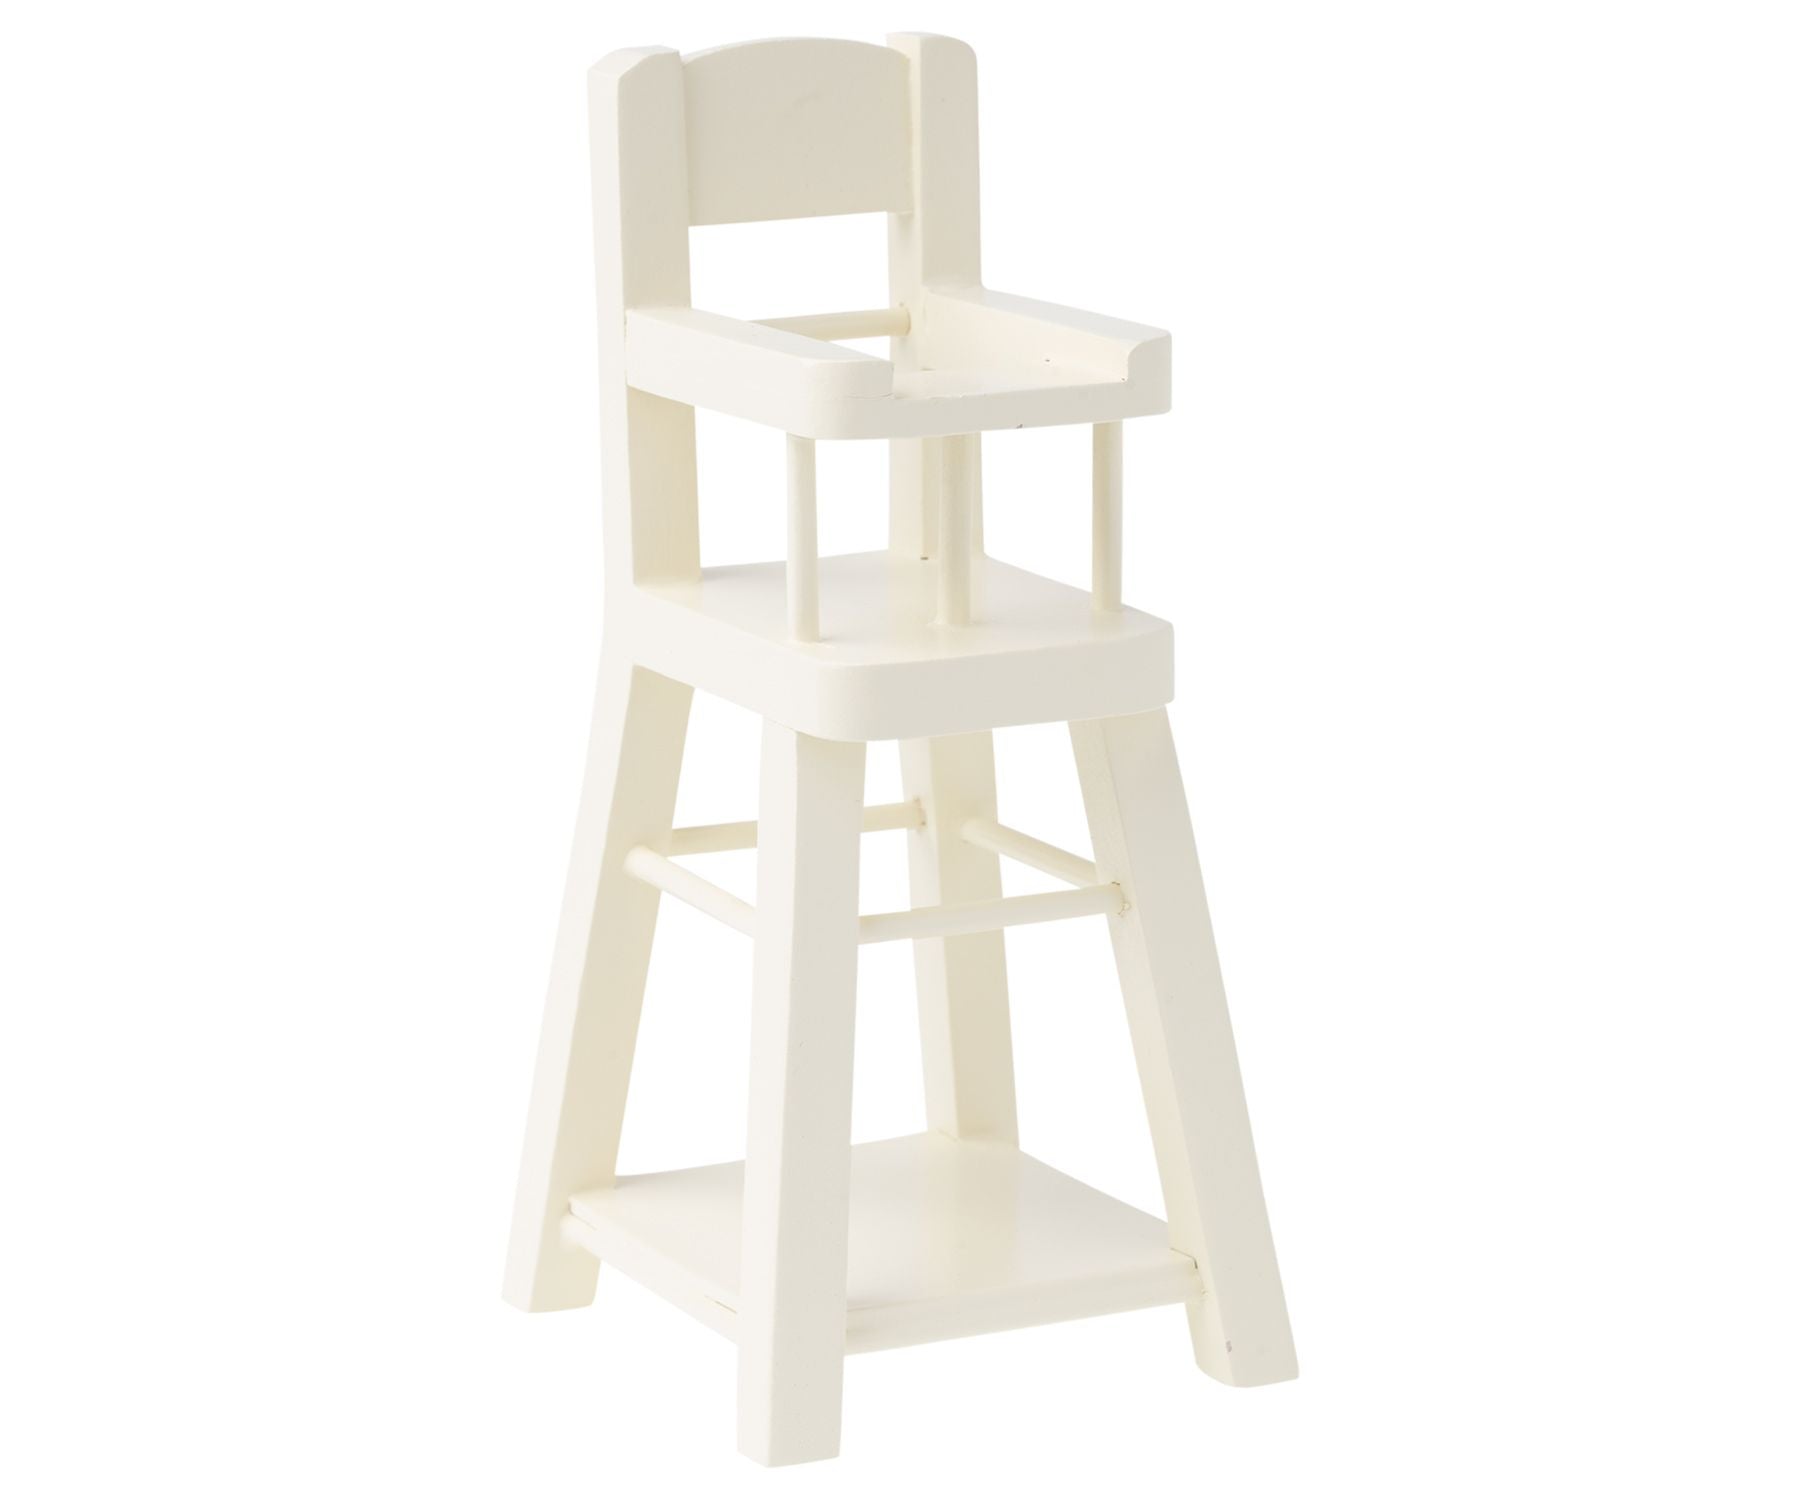 Maileg Micro White High Chair